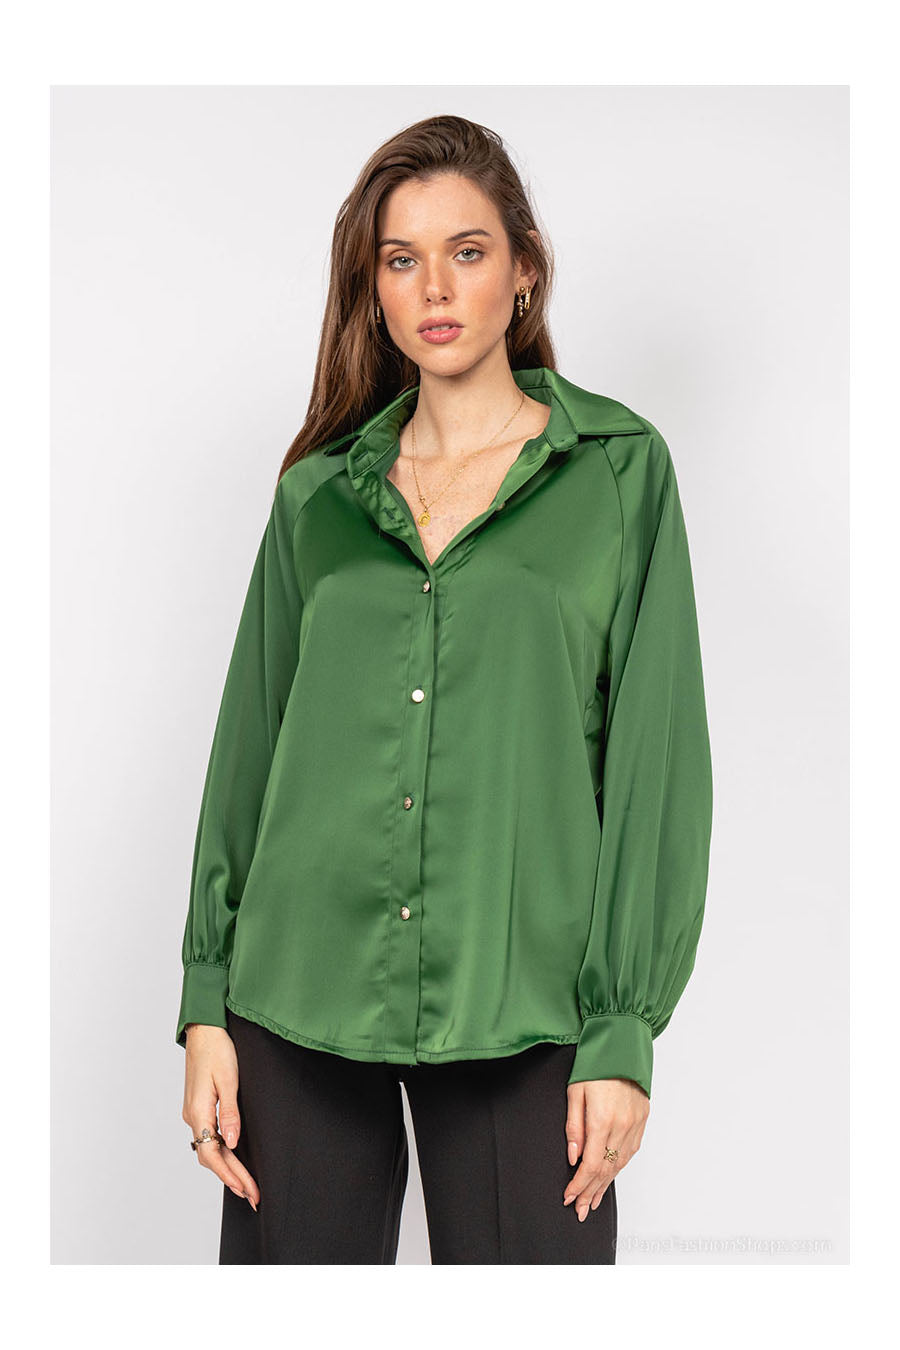 Γυναικείο πουκάμισο Kailah, Πράσινο 2